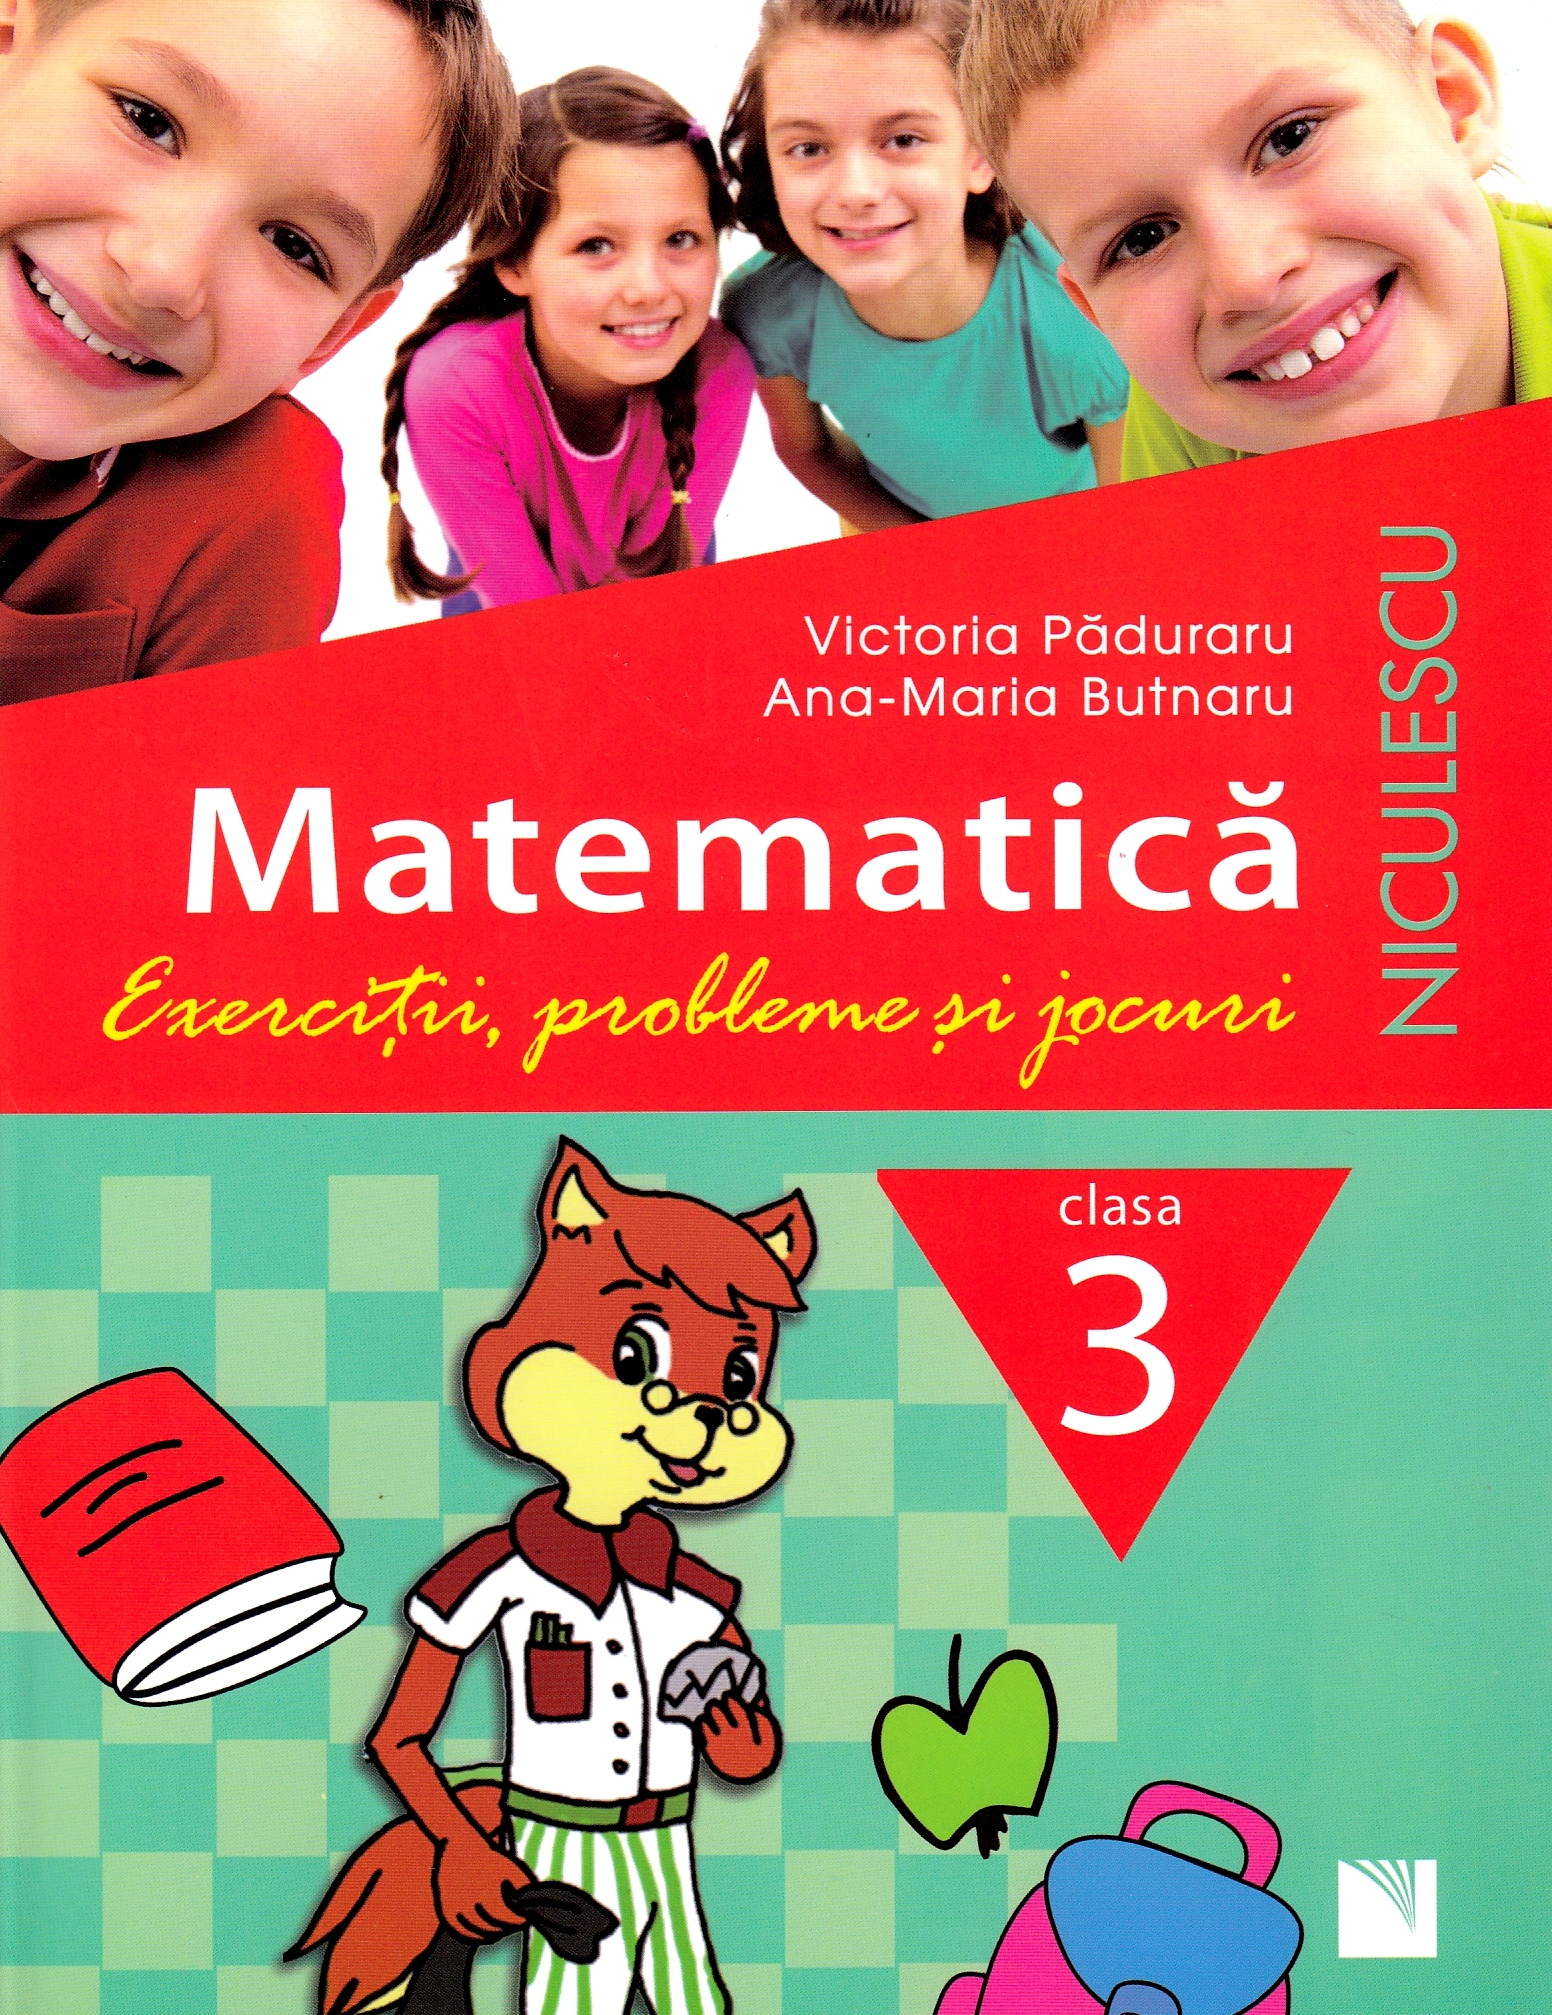 Matematica - Clasa 3 - Exercitii, probleme si jocuri - Victoria Paduraru